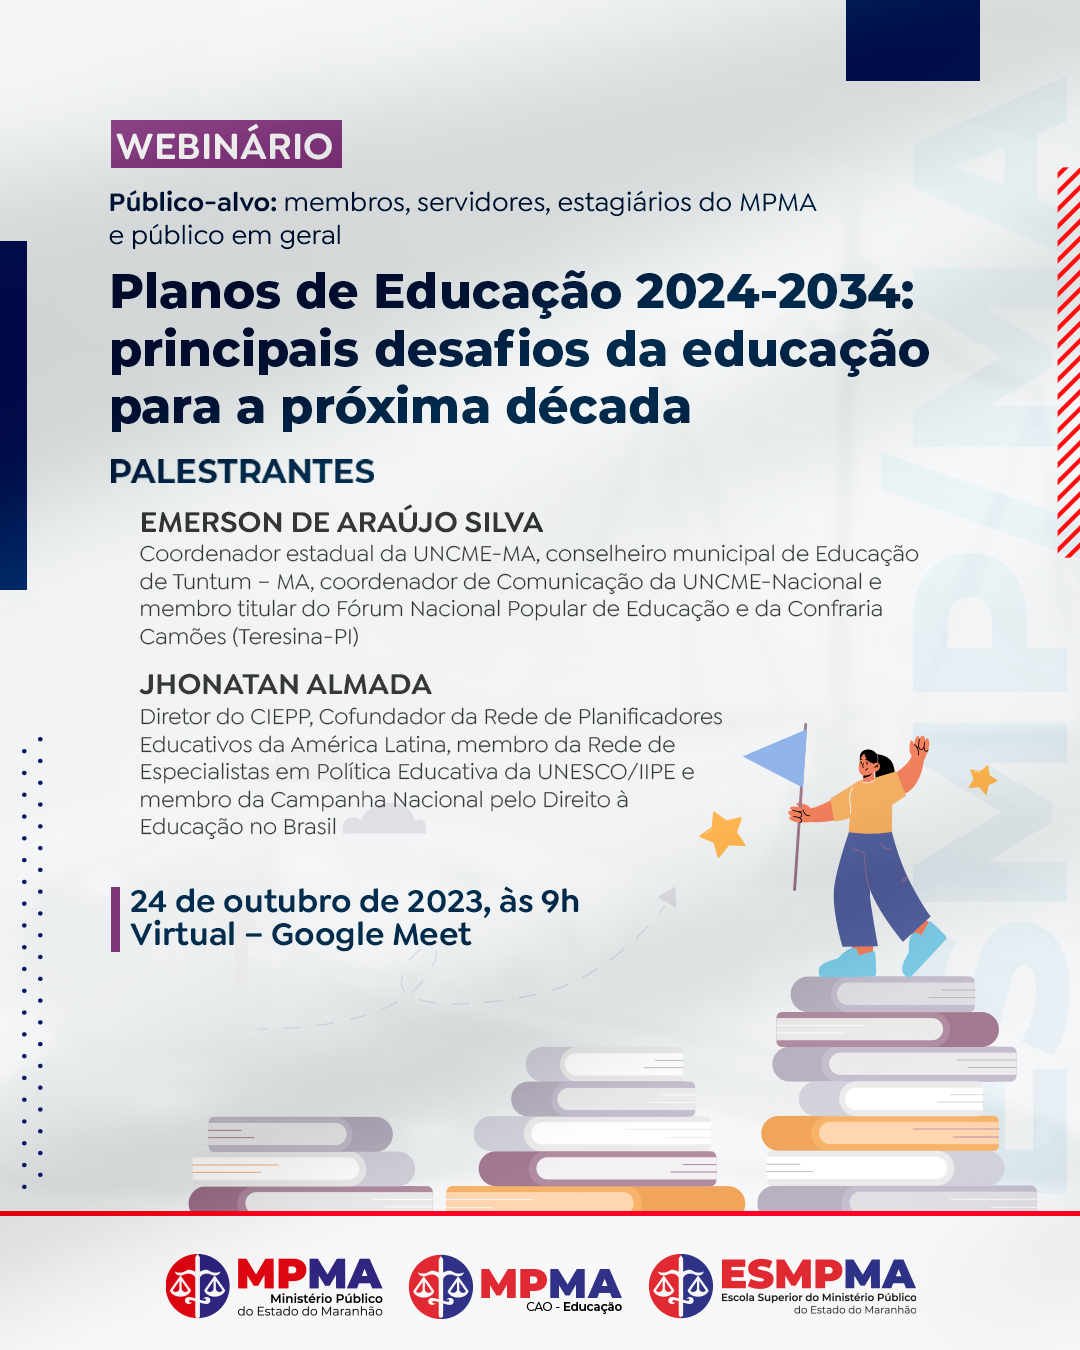 Webinário Planos de Educação 2024-2034: principais desafios da educação para a próxima década